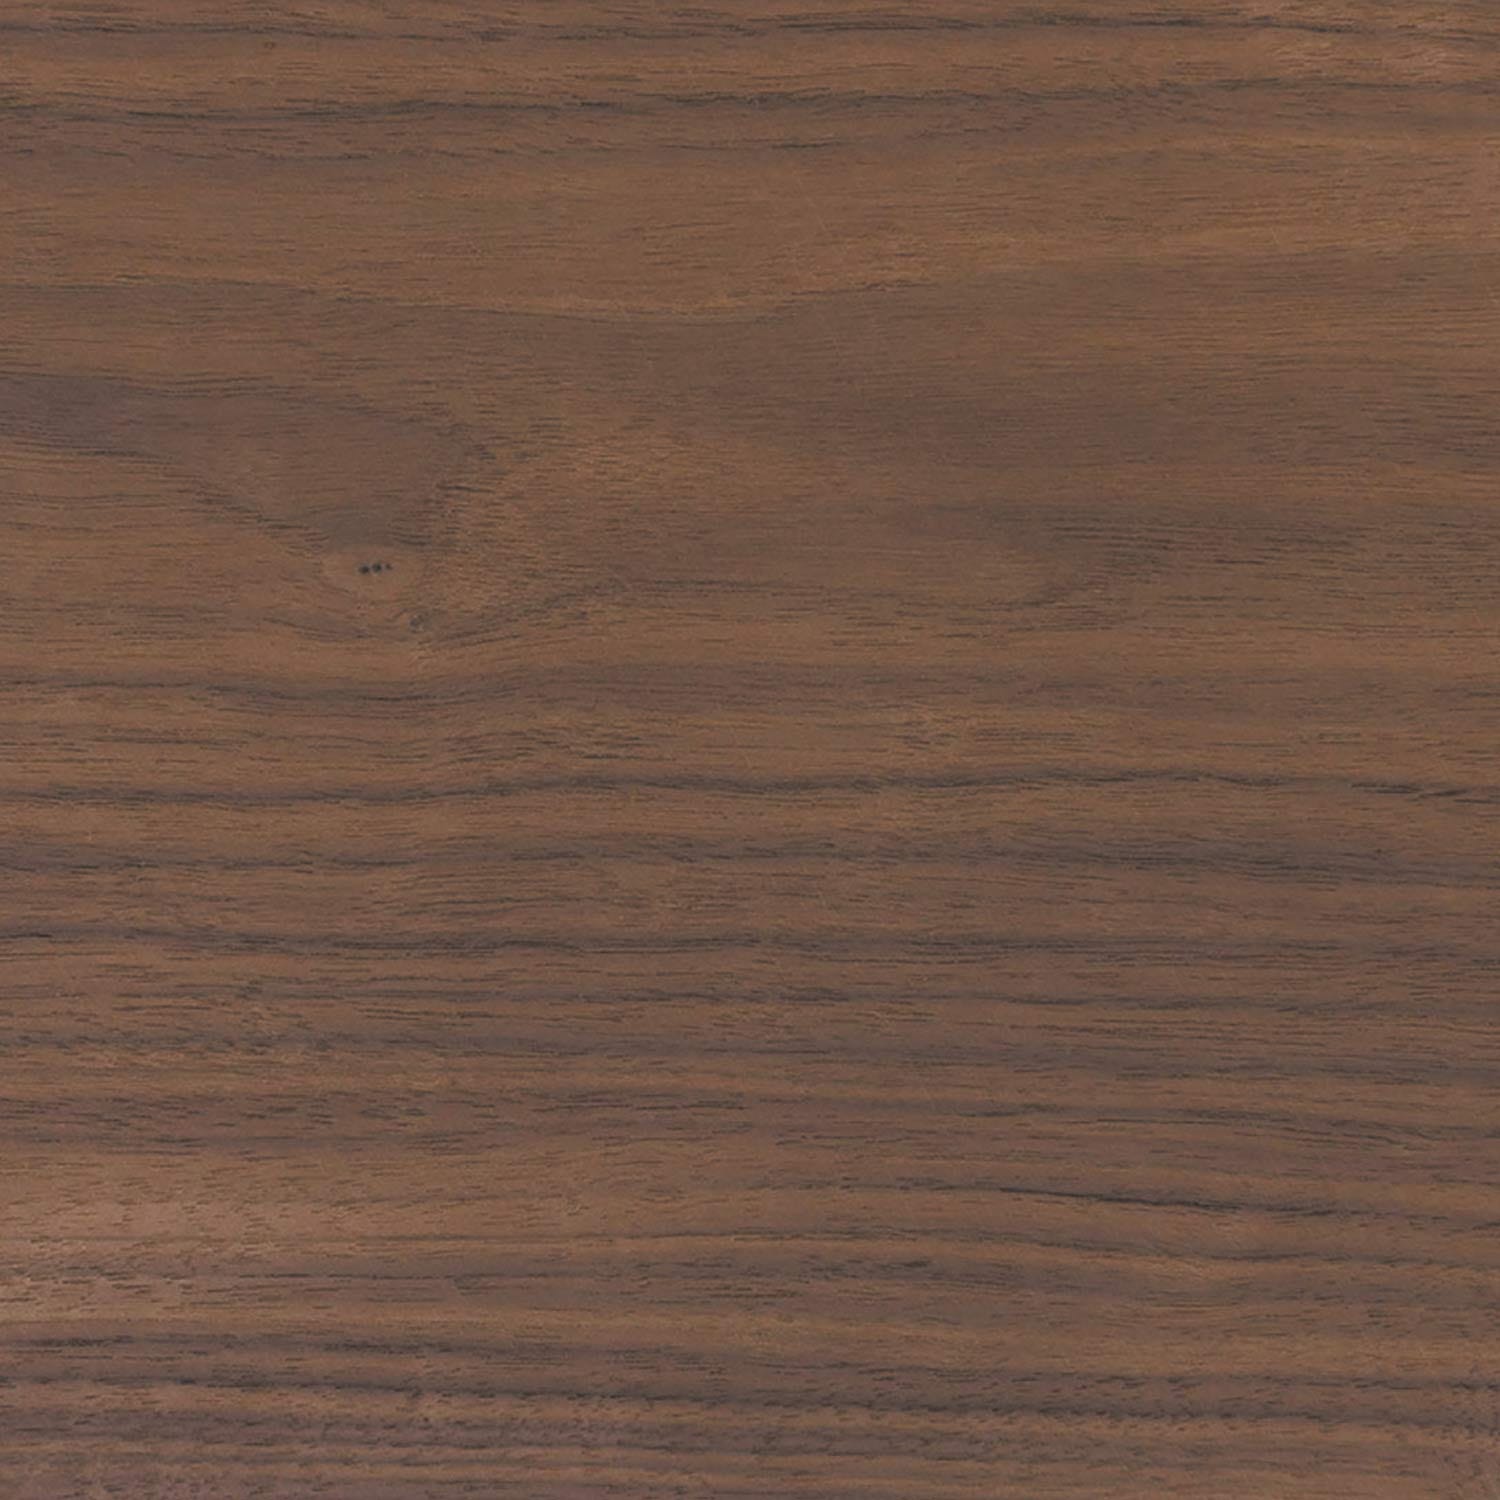 Fogli impiallacciati in legno Louro preto, 30x18 cm, 2 fogli, grado A/B  CE1LPT1X2 / foglia impiallacciatura in legno / campione impiallacciatura in  legno / impiallacciatura intarsiata -  Italia